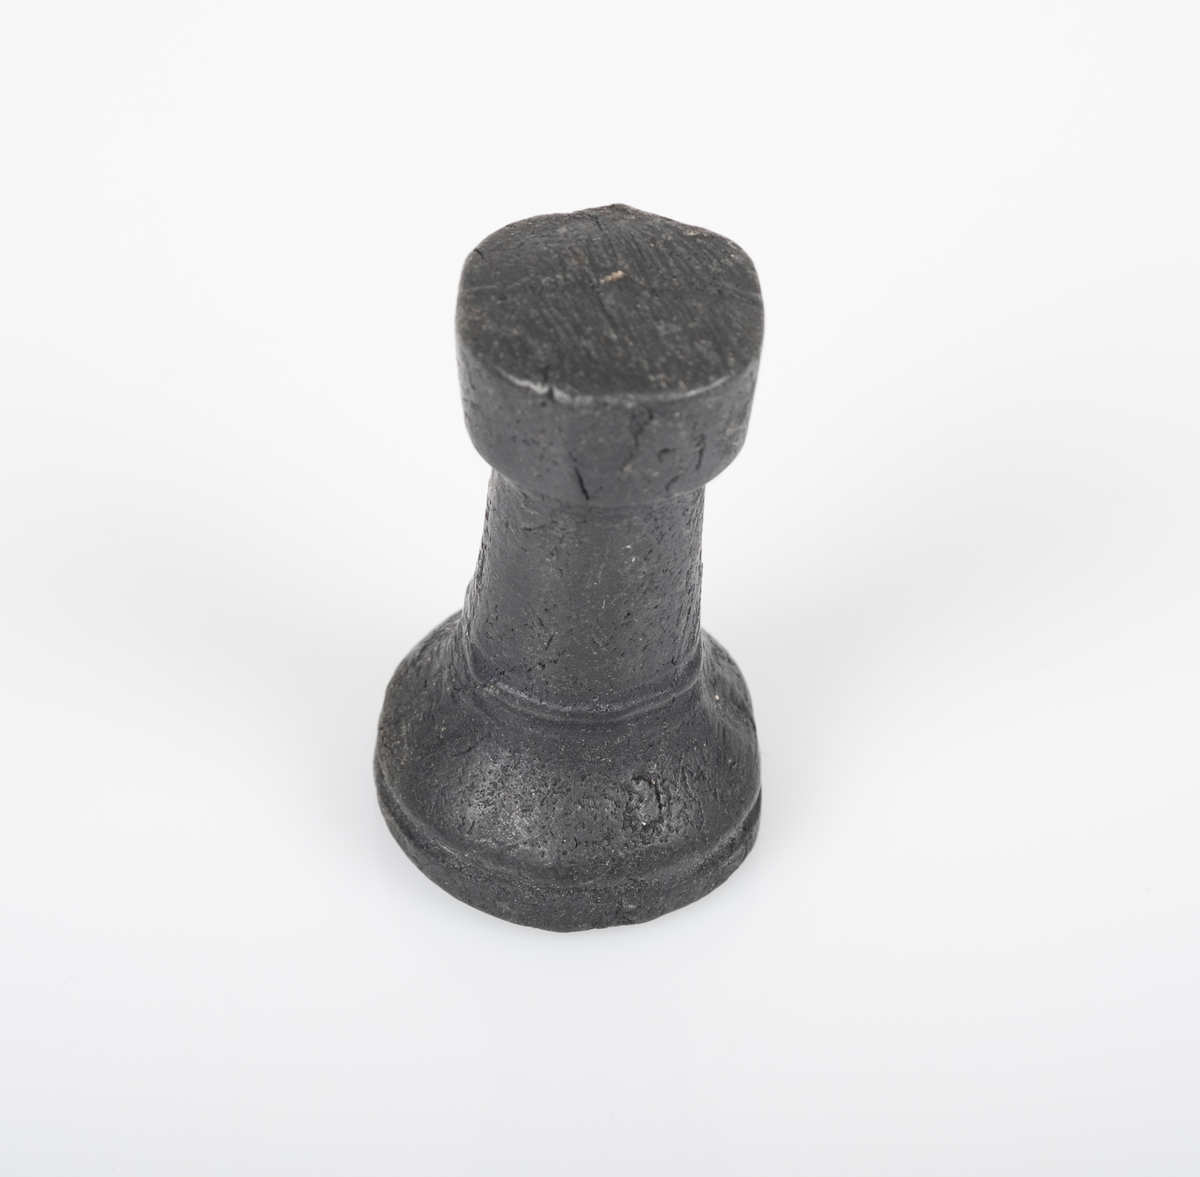 Sjakkbrikken (tårn) er laget av tre, og er malt svart. Toppen er flat. Et lite avlangt hull på undersiden.